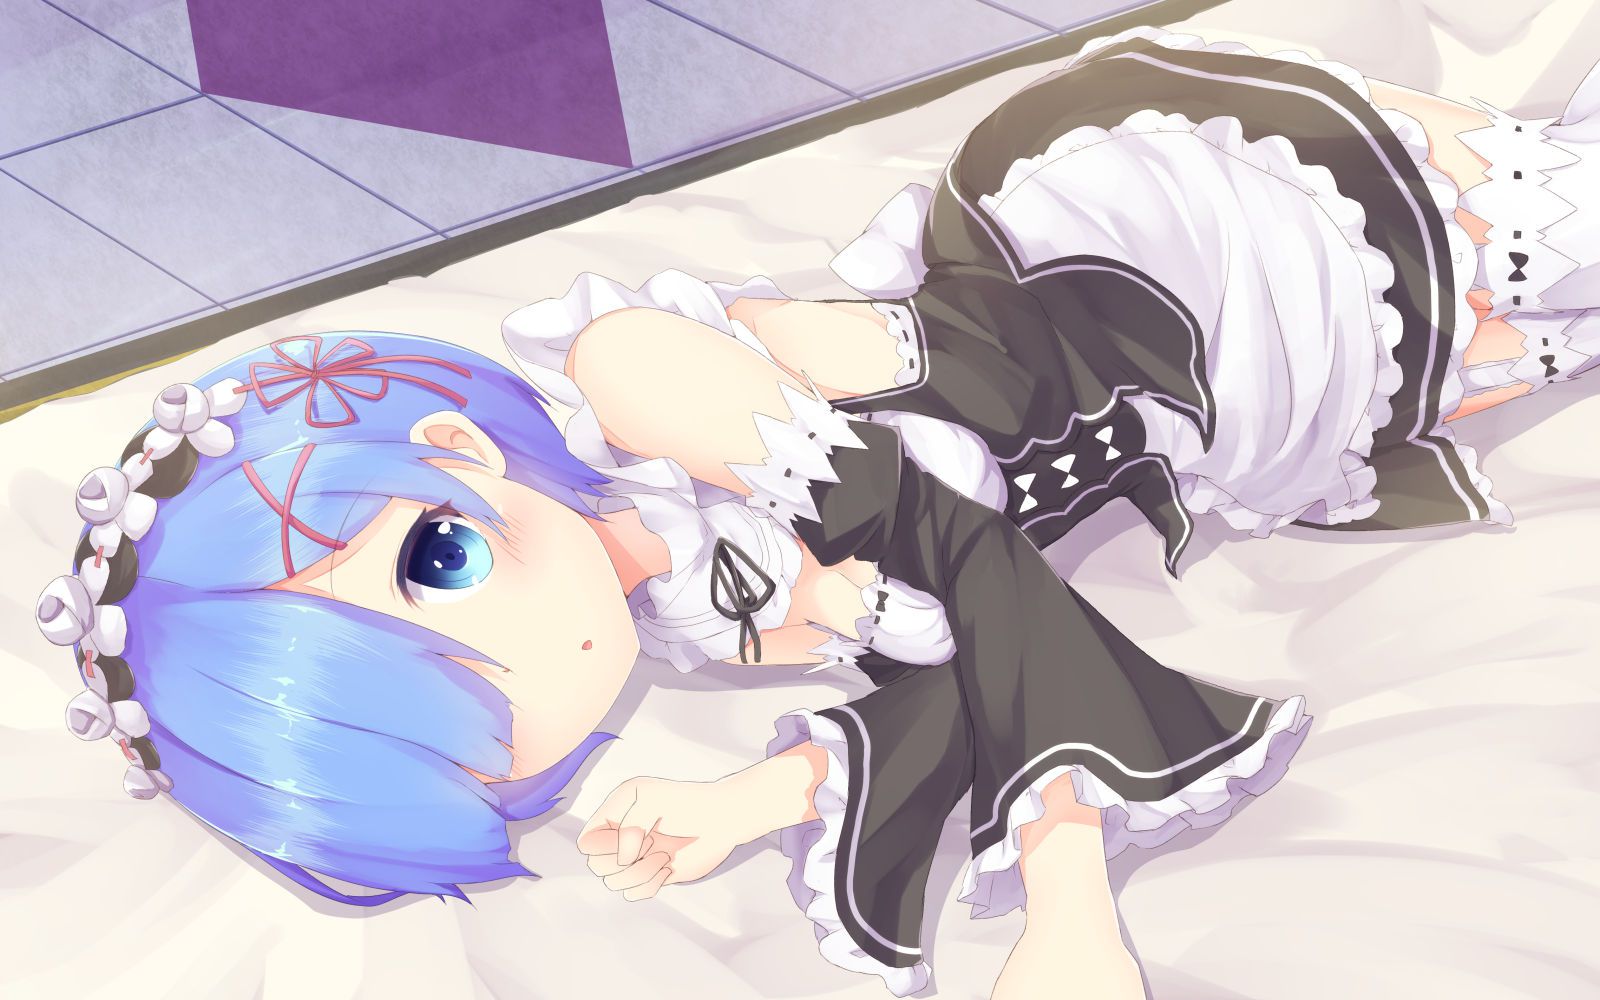 "Rezero" dakimakura REM's popular release postponed past the pillow cover image of wwwwwwwwwww 5